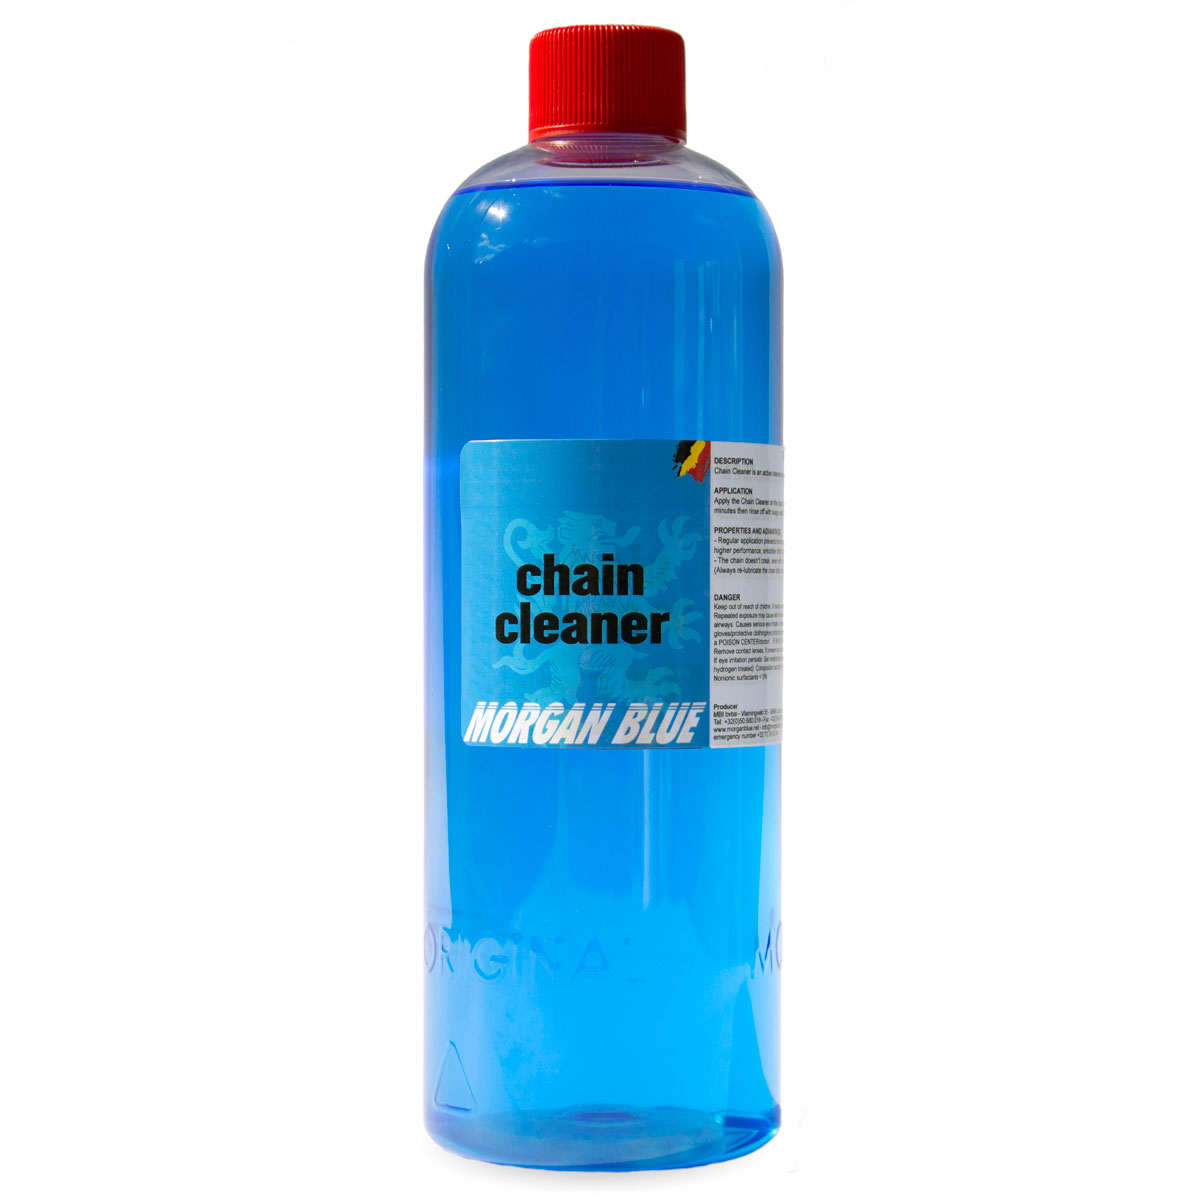 čistící prostředek Morgan Blue Chain Cleaner 1l